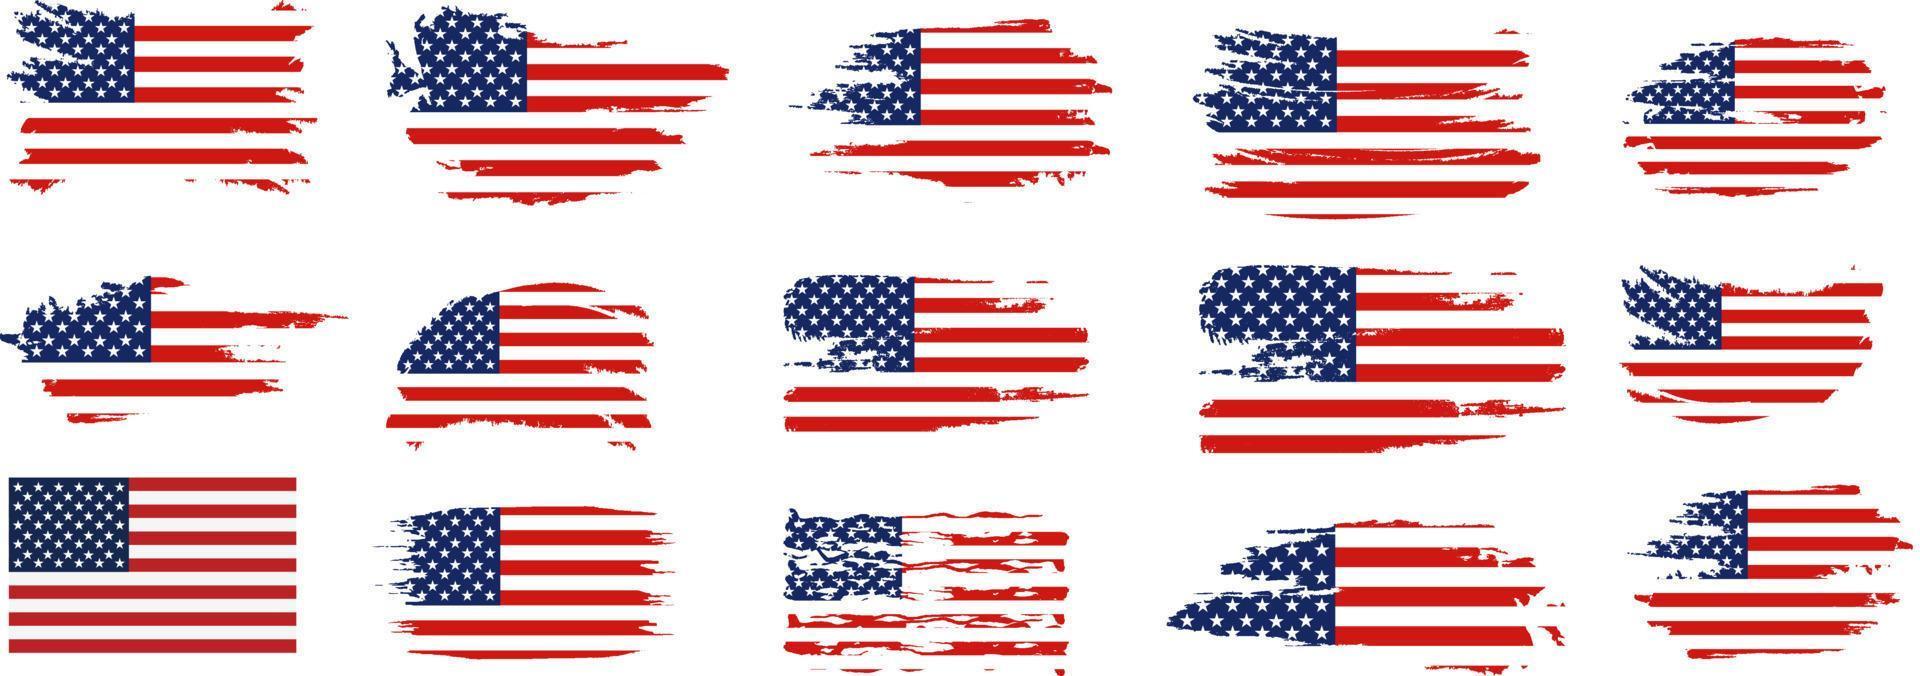 Flagge der Vereinigten Staaten von Amerika, Bürstenhintergrundsatz. usa-flaggenpinsel-vektorsatz. glücklich 4. juli usa unabhängigkeitstag grußkarte. beschriftung und amerikanische flagge grunge pinsel malen hintergrund. vektor